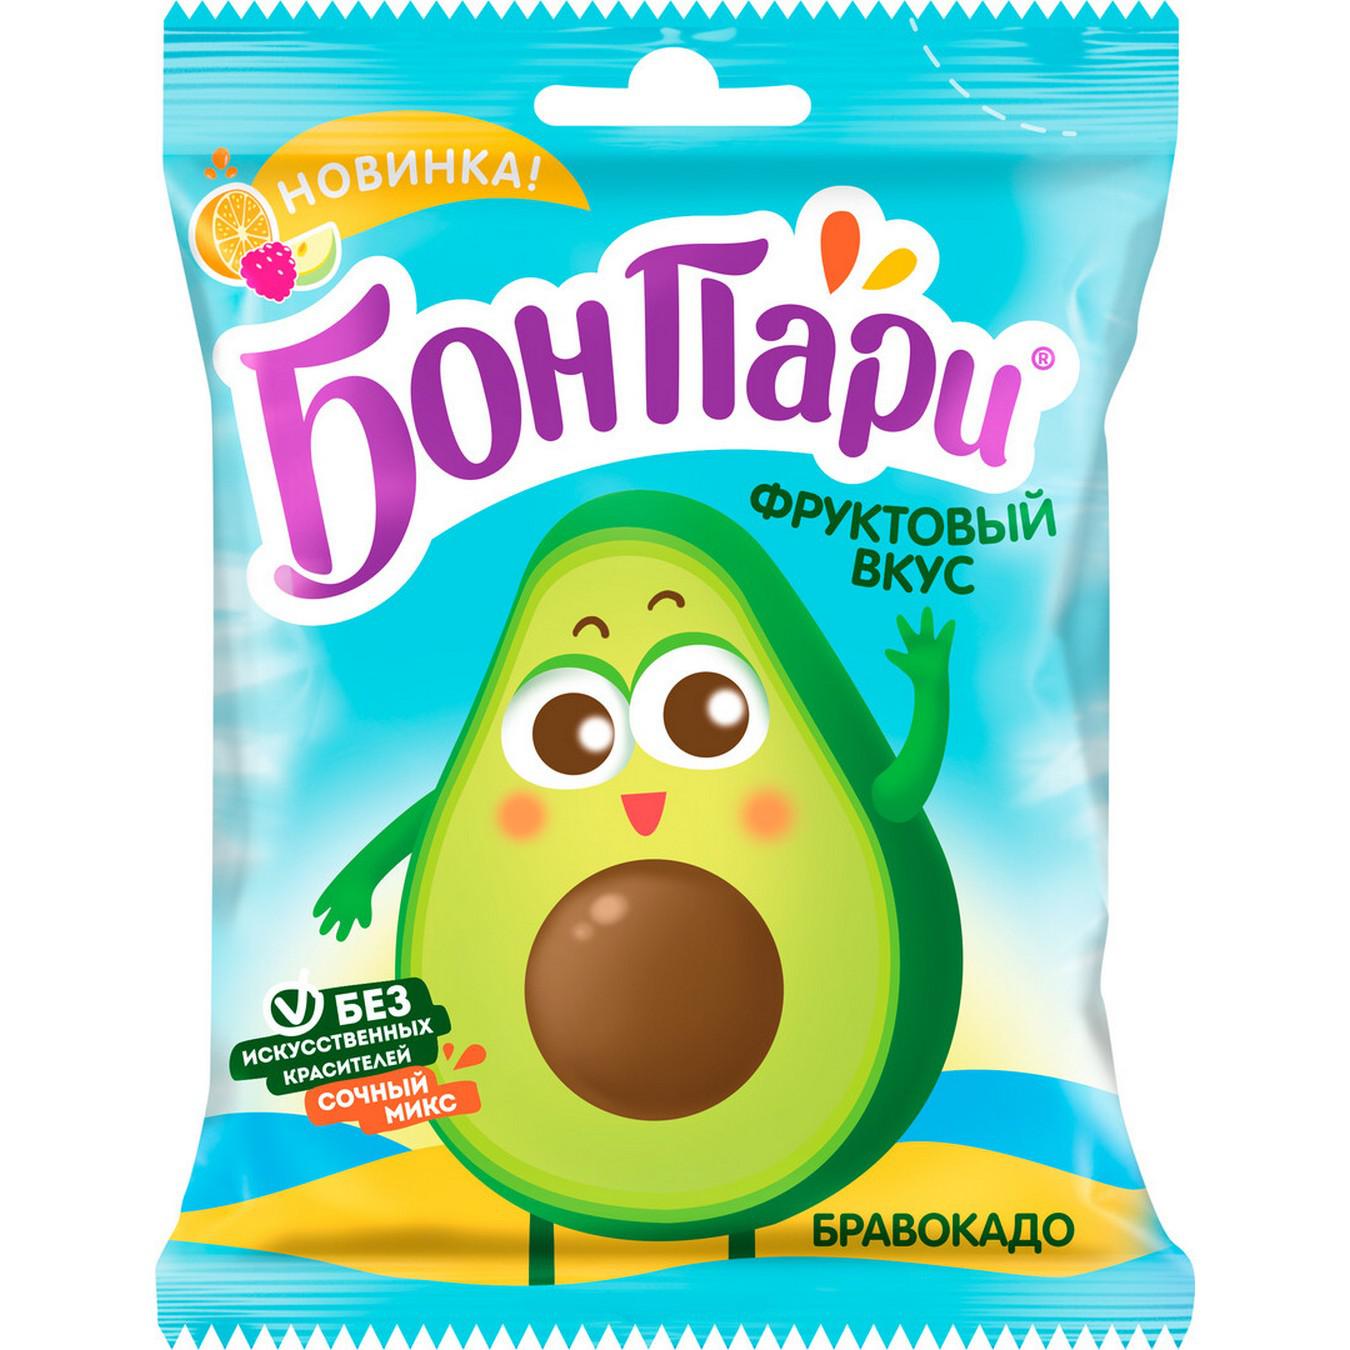 Мармелад Бон пари авокадо 100г